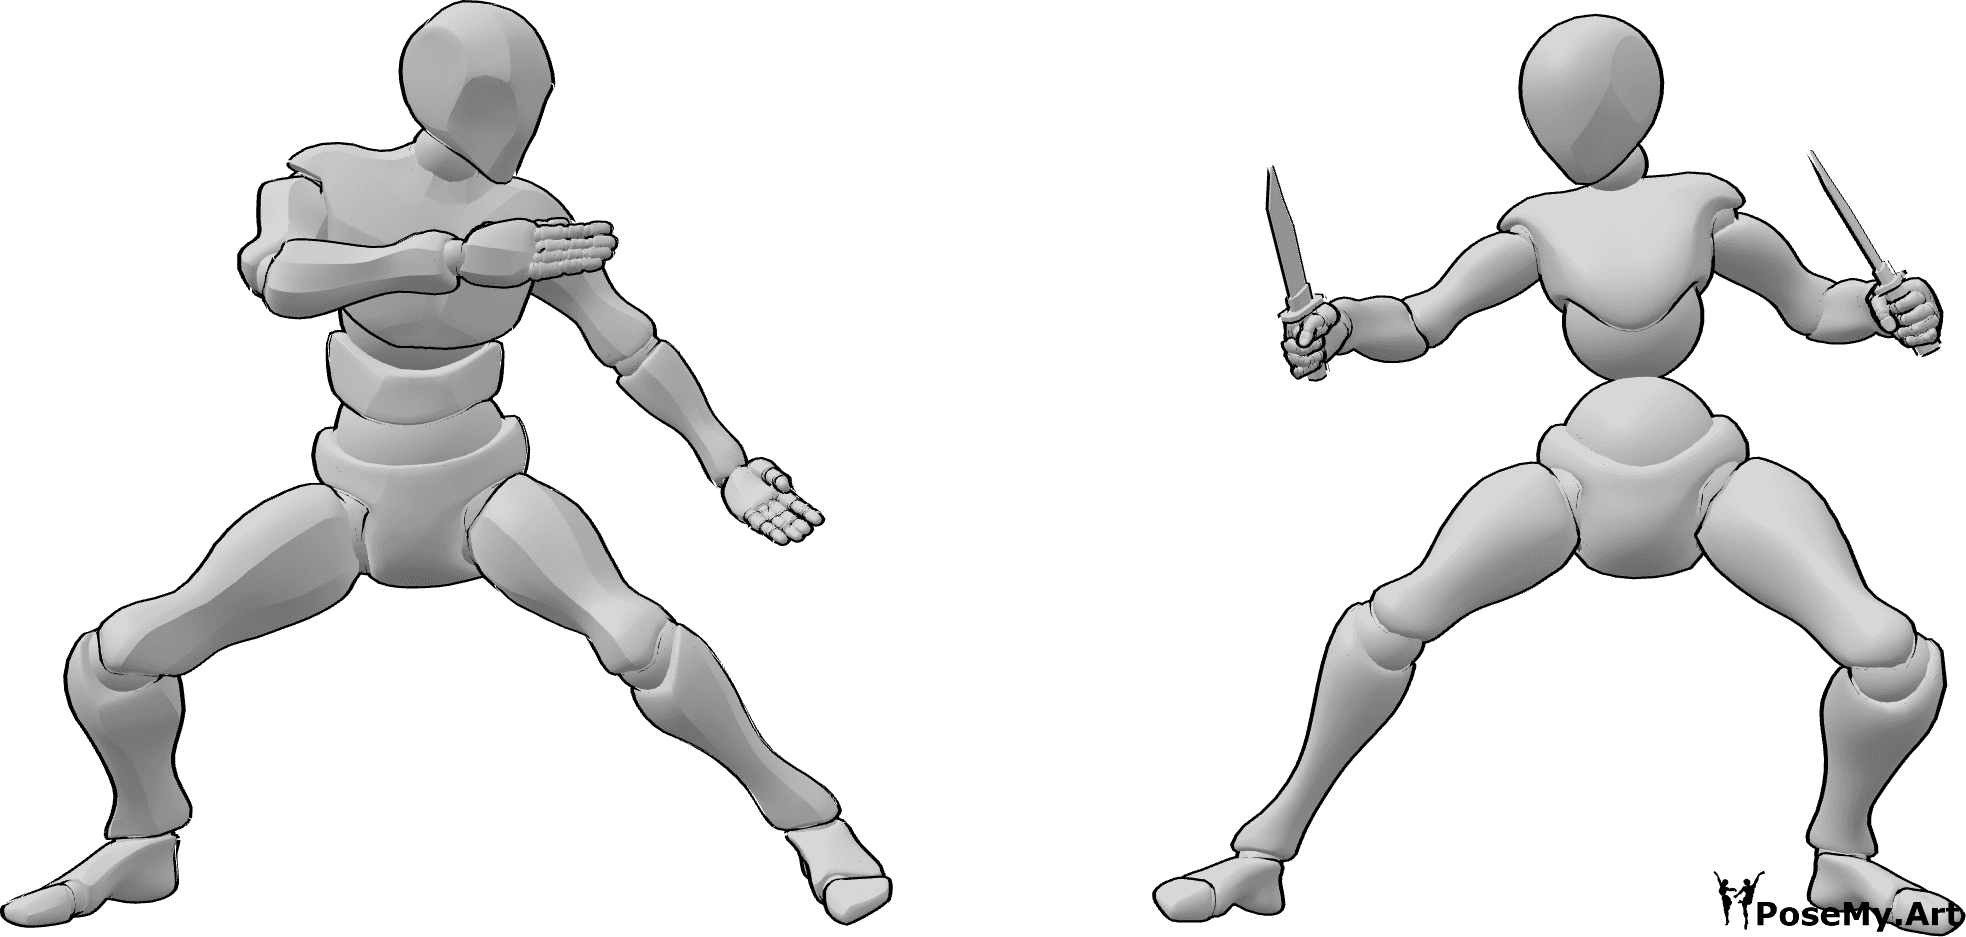 Riferimento alle pose- Posa di combattimento con i coltelli - Una donna e un uomo stanno per iniziare a litigare, la donna tiene in mano dei coltelli